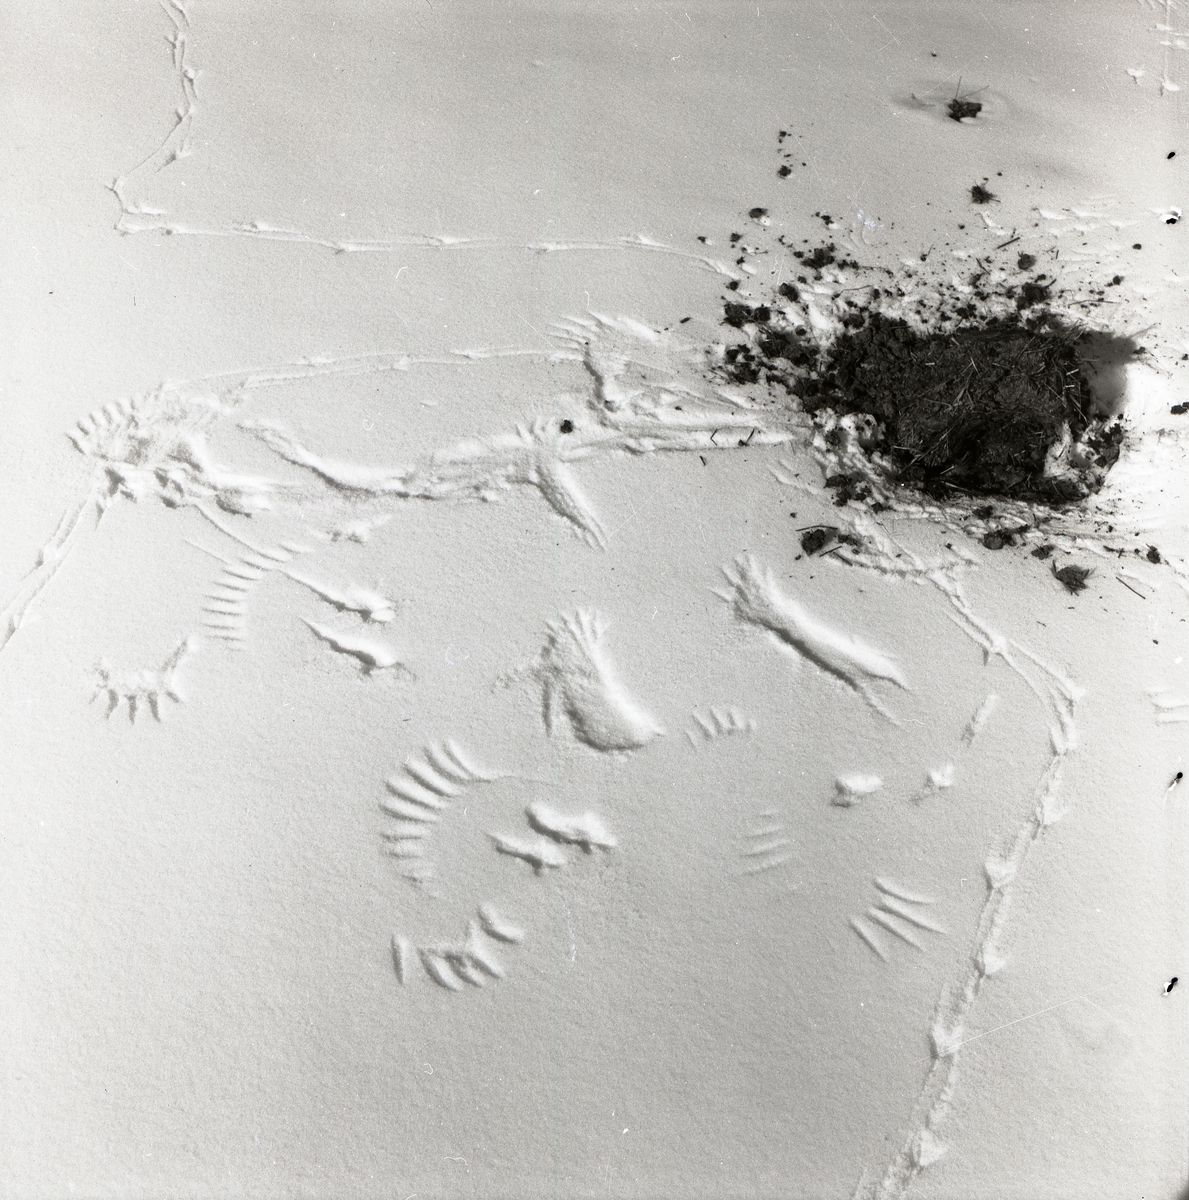 Spår efter skata och kråka intill en jordhög i snön, Norsnäs den 17 april 1956.